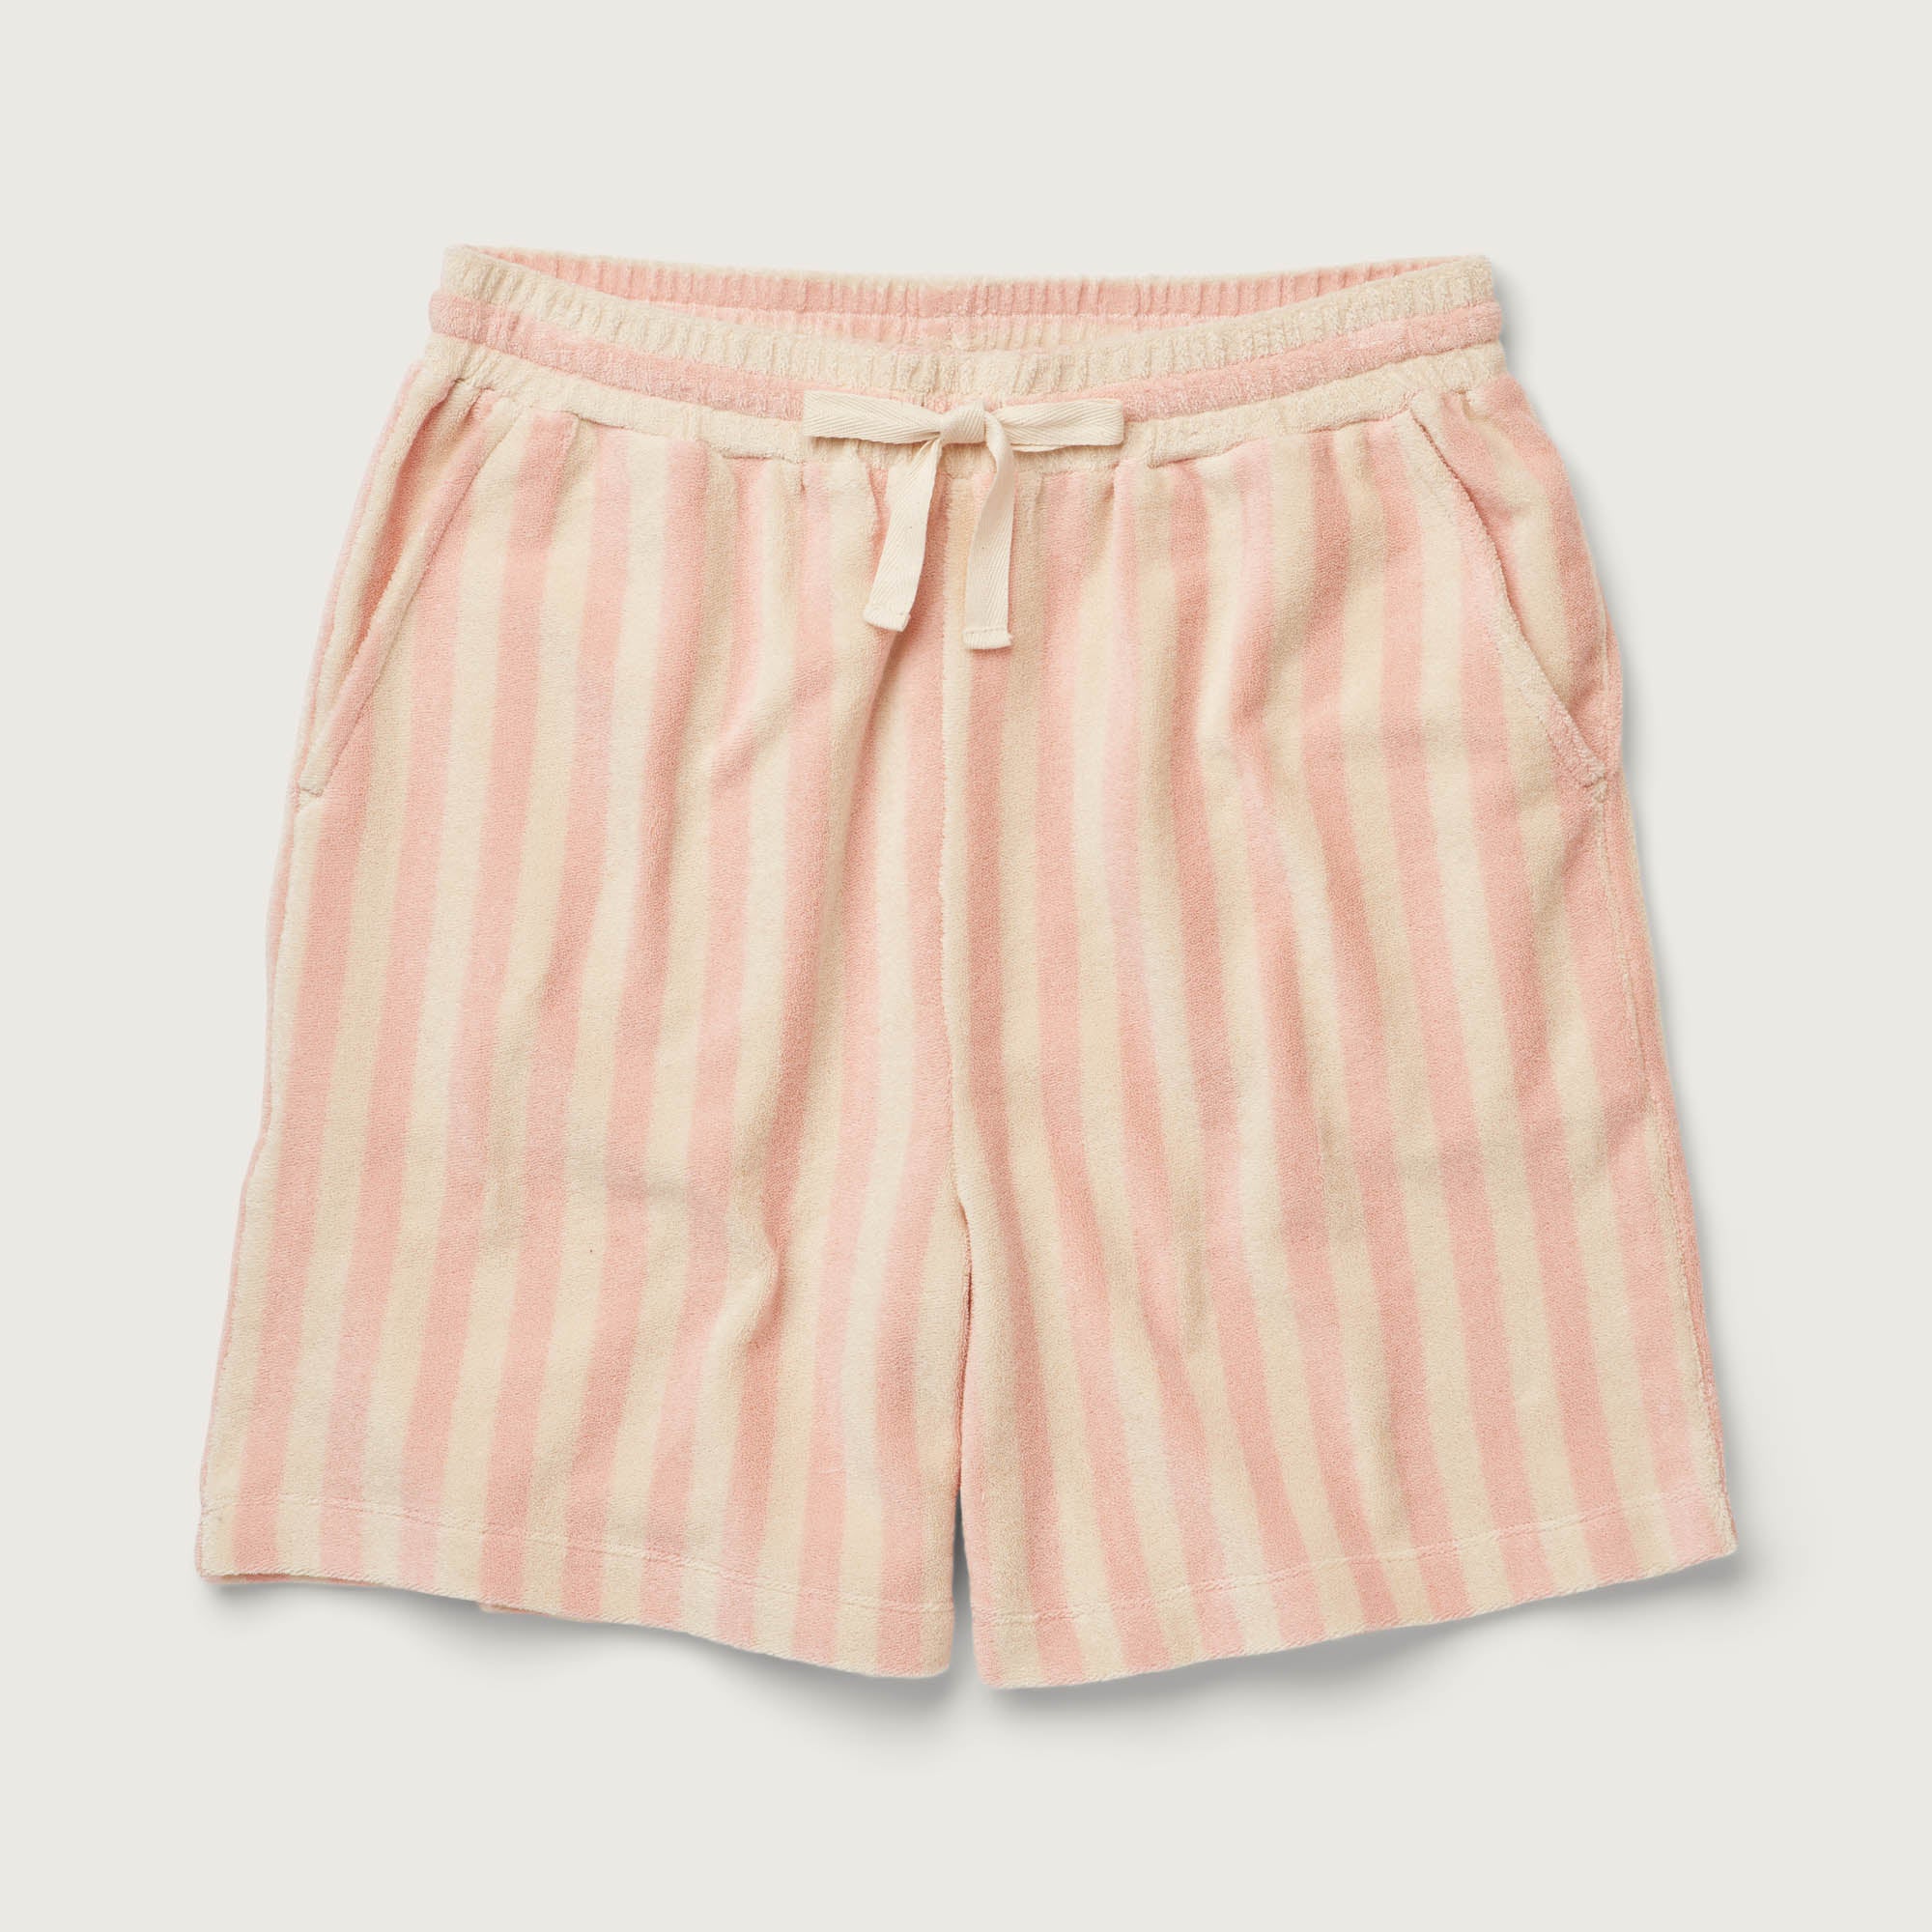 Bongusta, Product image, Naram Shorts, tropical & creme, 3 of 3}